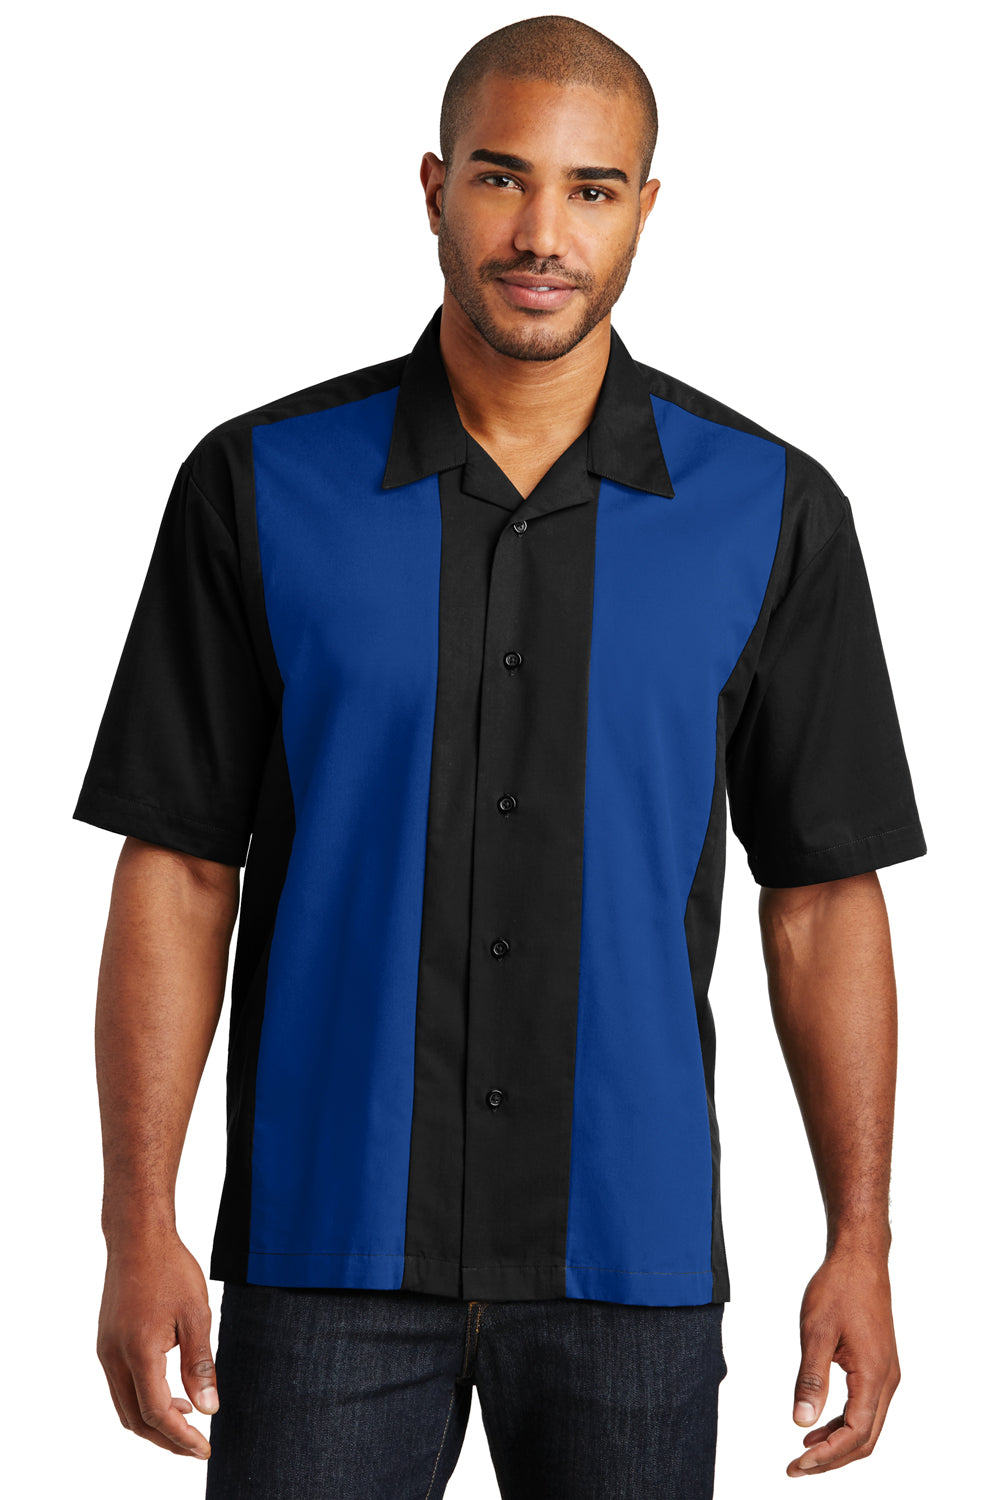 Mens Columbia Shirts Mens Short Sleeve Button Down Shirts Big And Tall  Hawaiian Bowling Shirts For Short Sleeve Button Down 